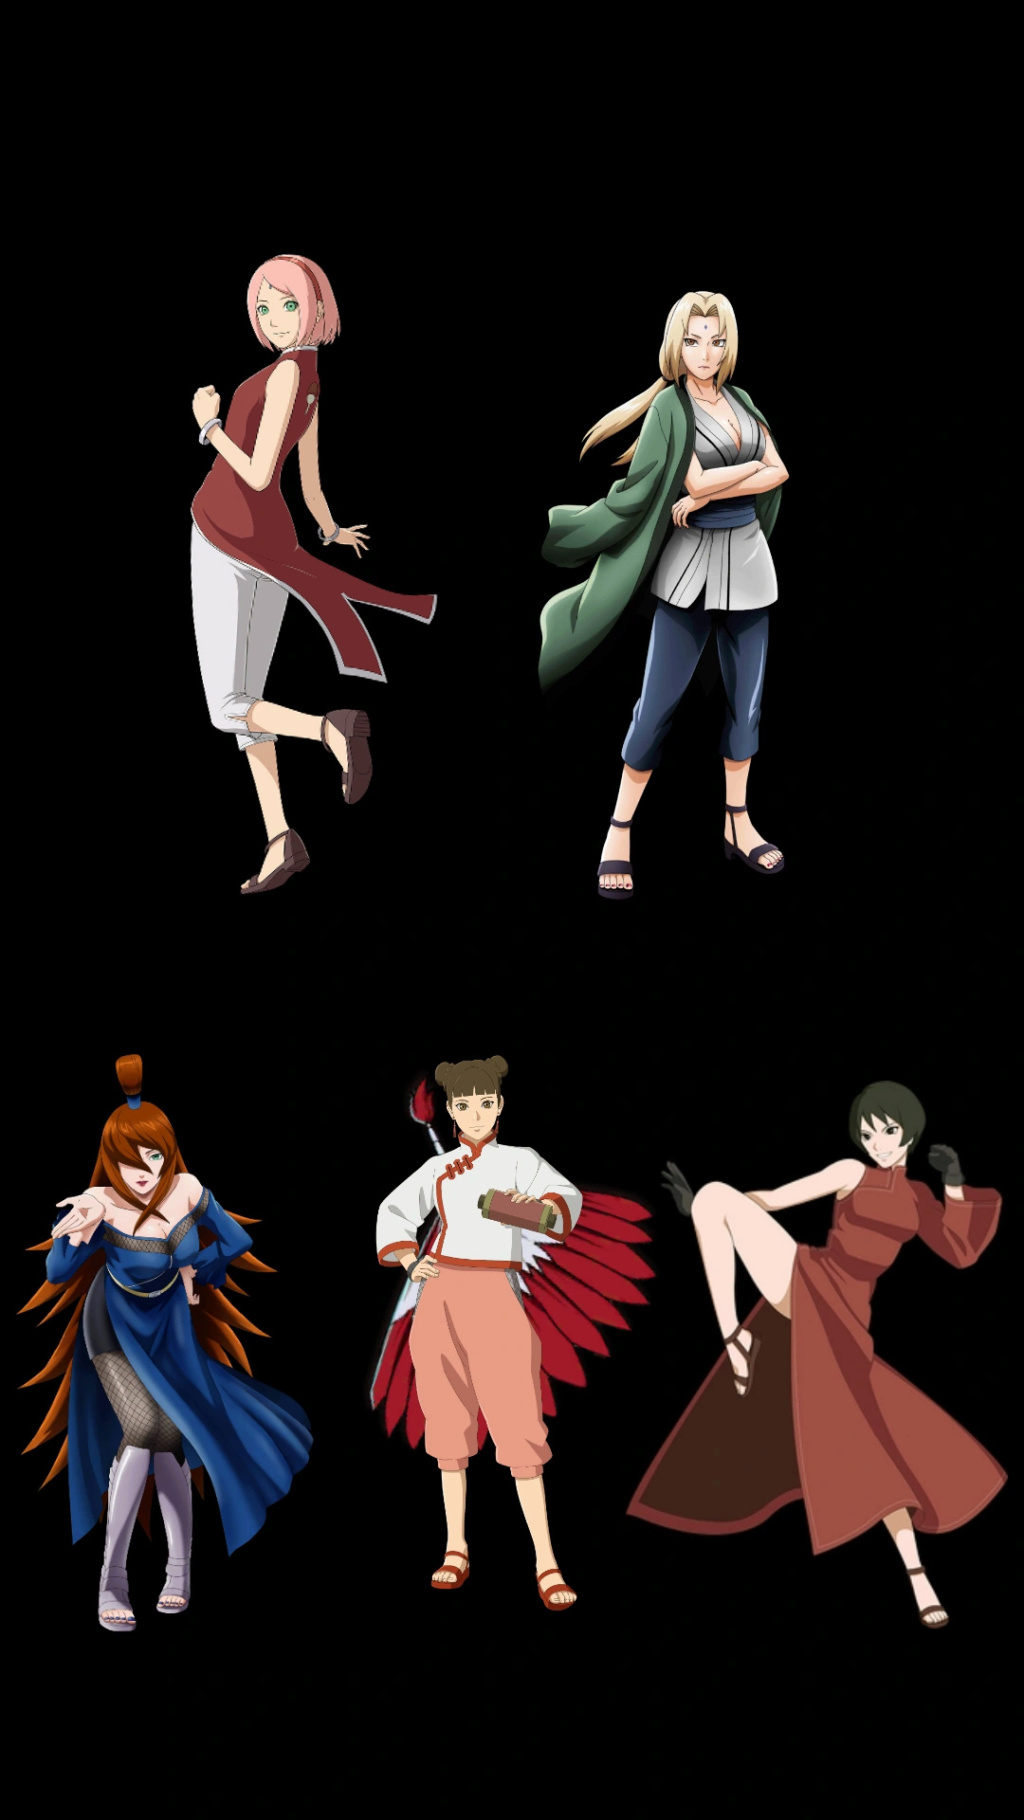 [Tópico repetitivo] Quais personagens femininos mais poderosos de Naruto? - Página 8 Img_2174